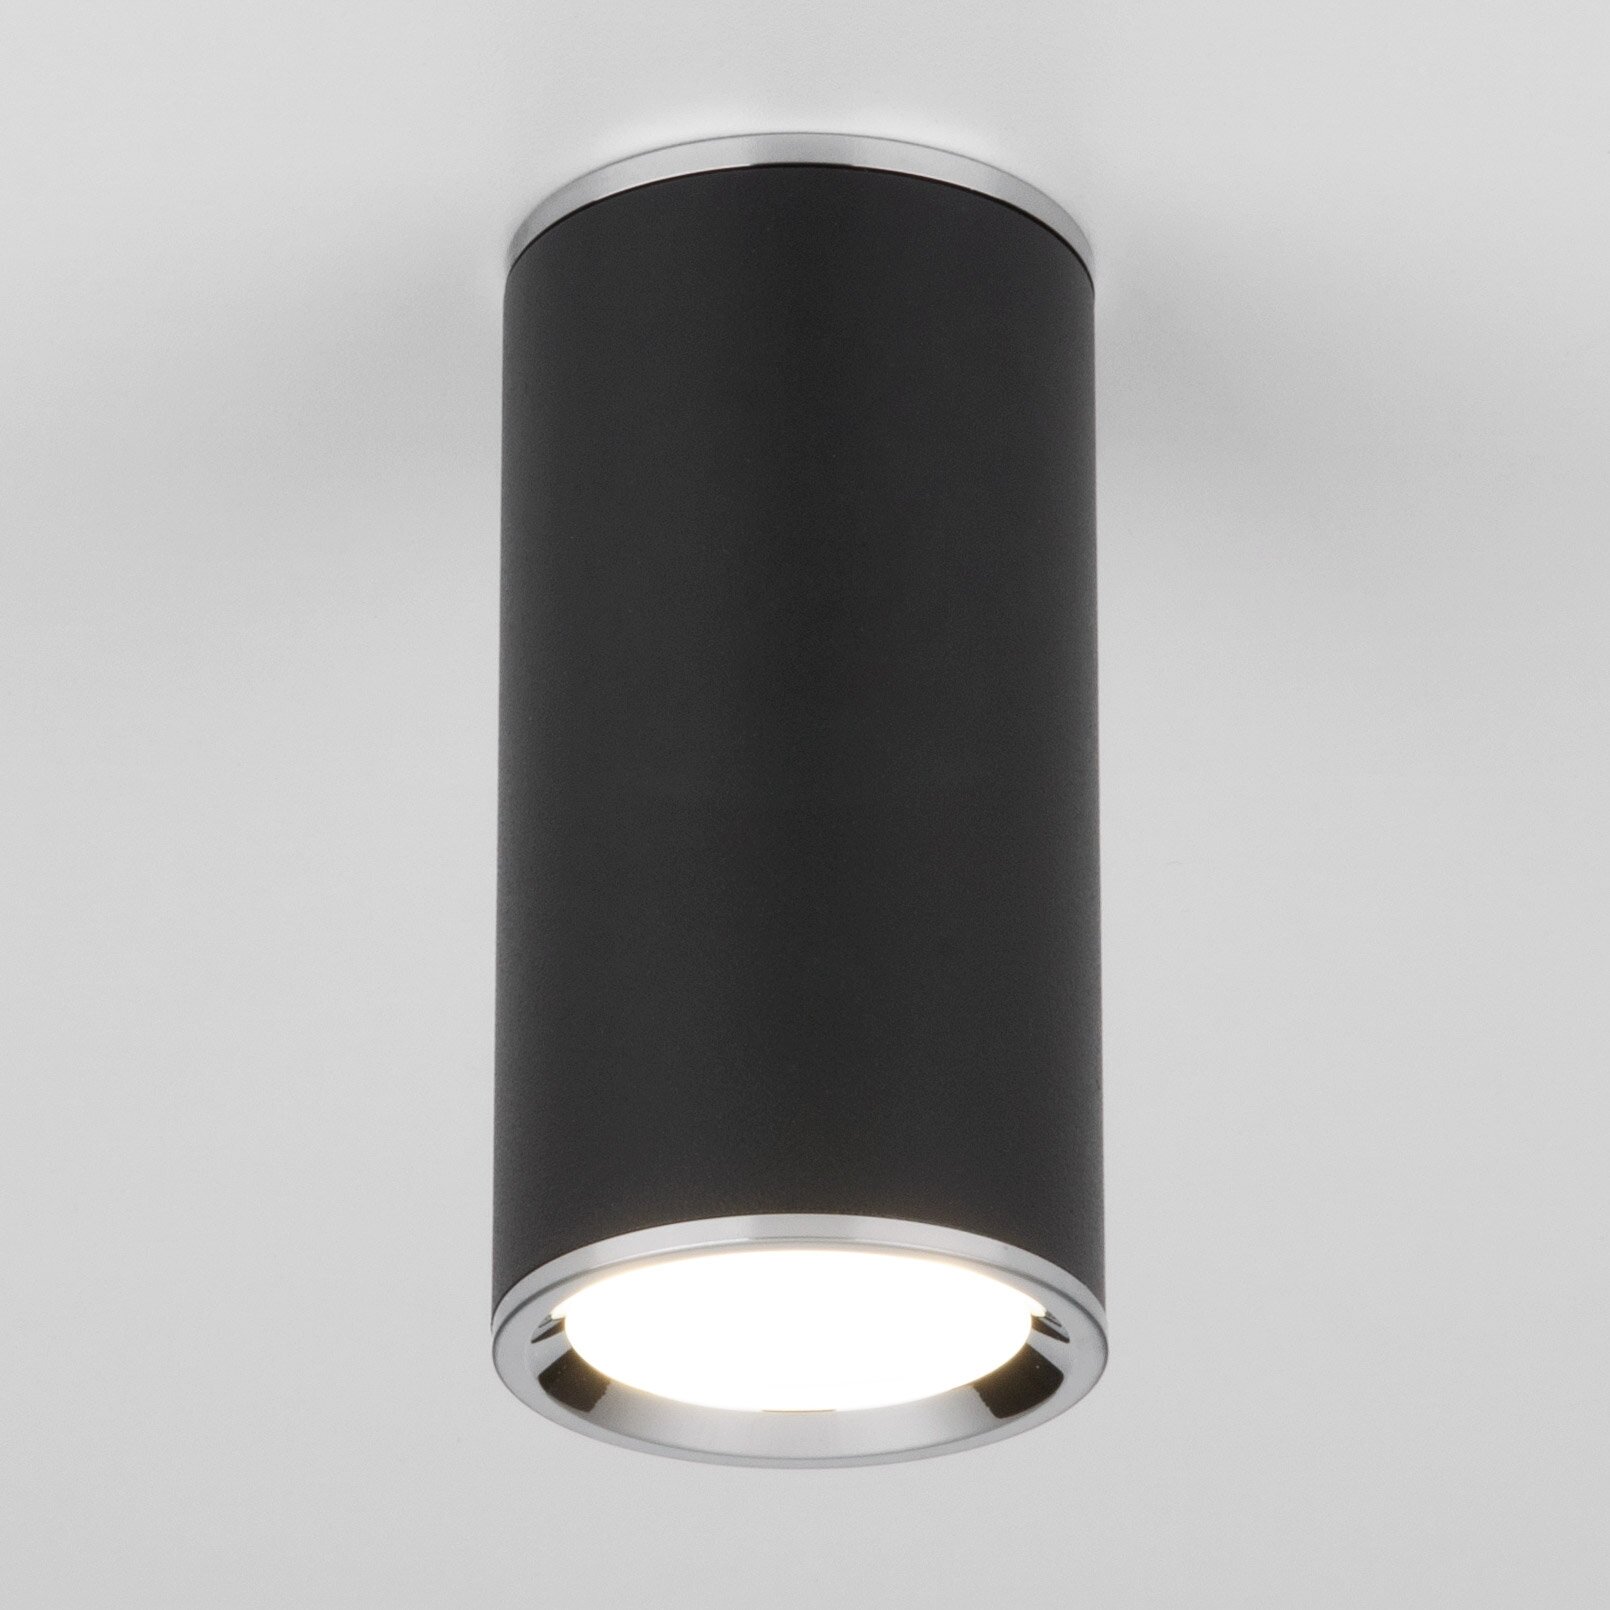 Спот / Накладной потолочный светильник Elektrostandard Rutero DLN101, GU10, BK черный